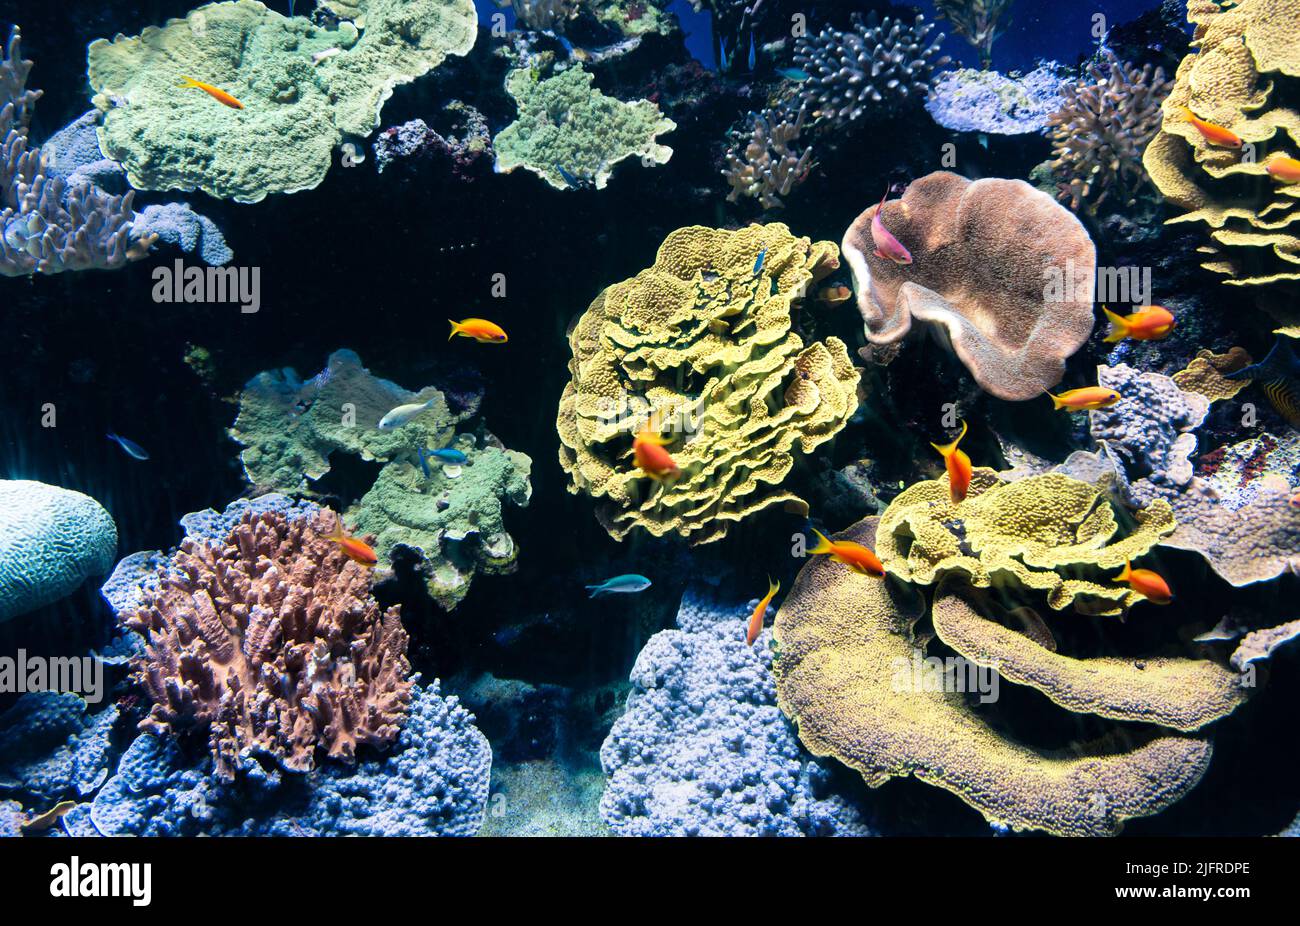 Unterwasserbild mit den schönen Farben und Formen der Korallen. Unterwasserwelt mit vielen bunten Fischen, die entlang der Korallen schwimmen. Stockfoto